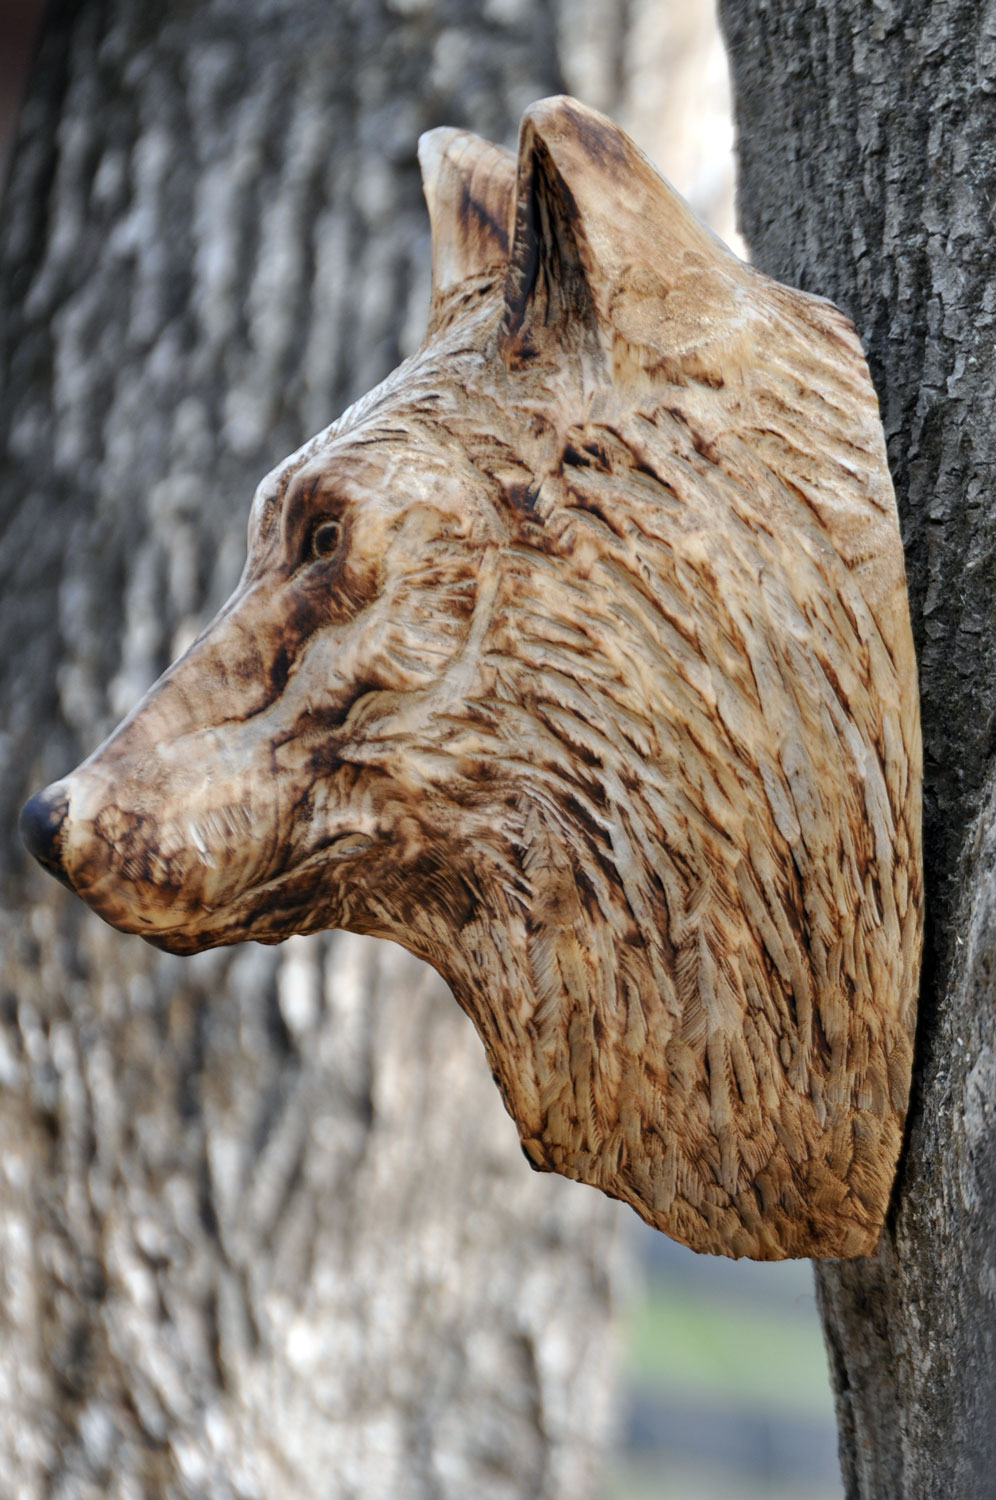 vlk-drevorezba-plastika-vyrezavani-carwing-woodcarving-trofej-hlava-radekzdrazil-20190331-01